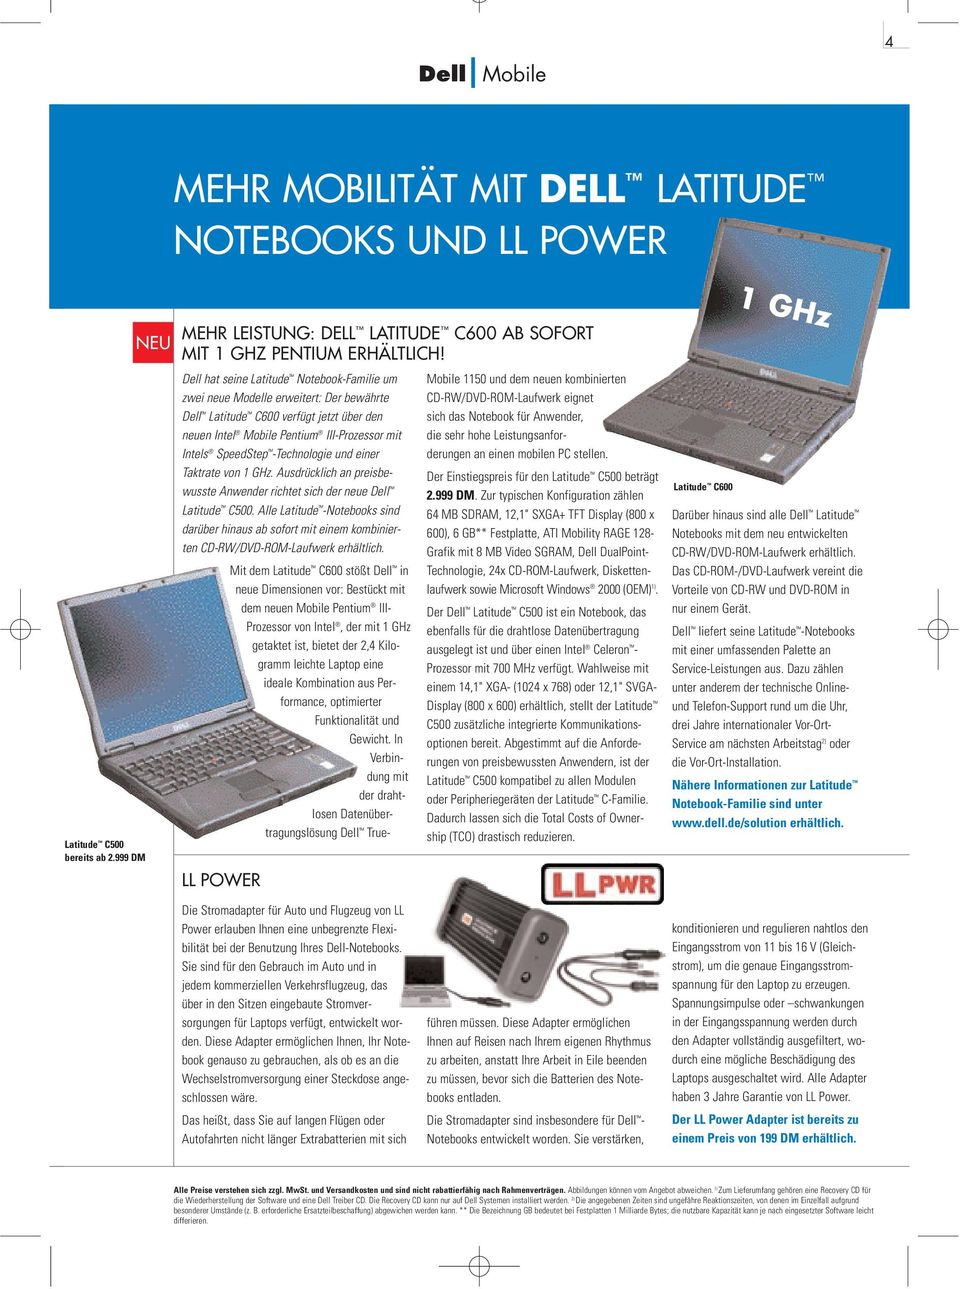 -Technologie und einer Taktrate von 1 GHz. Ausdrücklich an preisbewusste Anwender richtet sich der neue Dell Latitude C500.